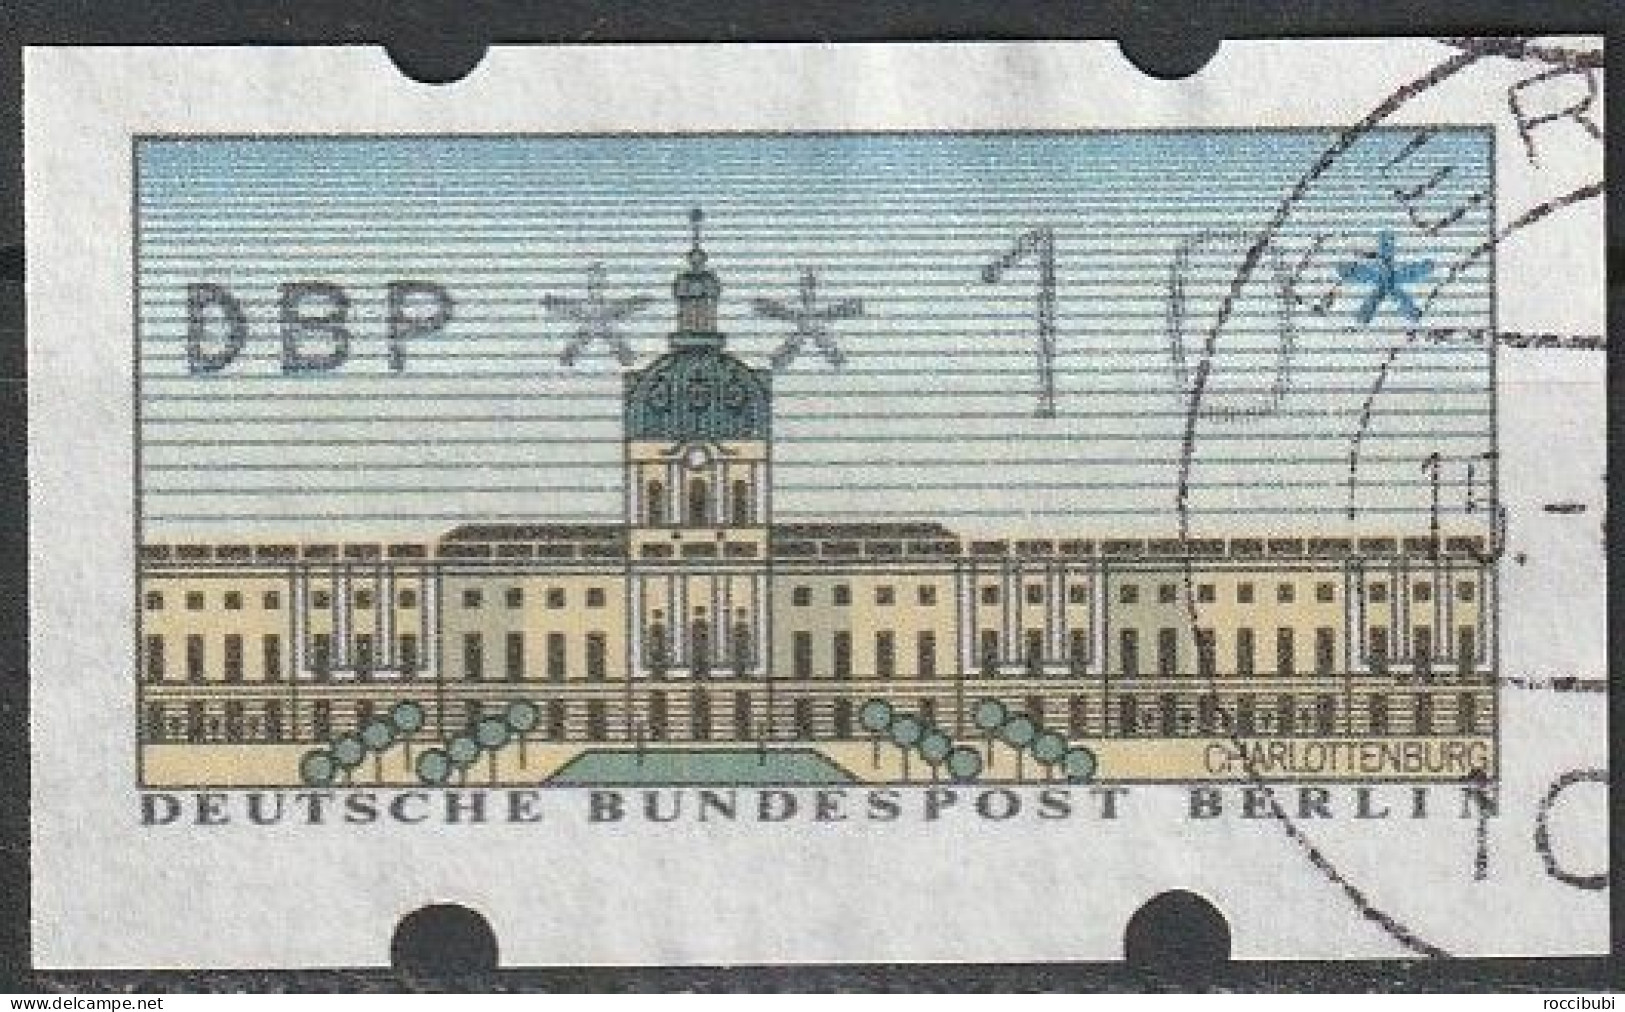 Berlin ATM 0,10 DM - Vignette [ATM]